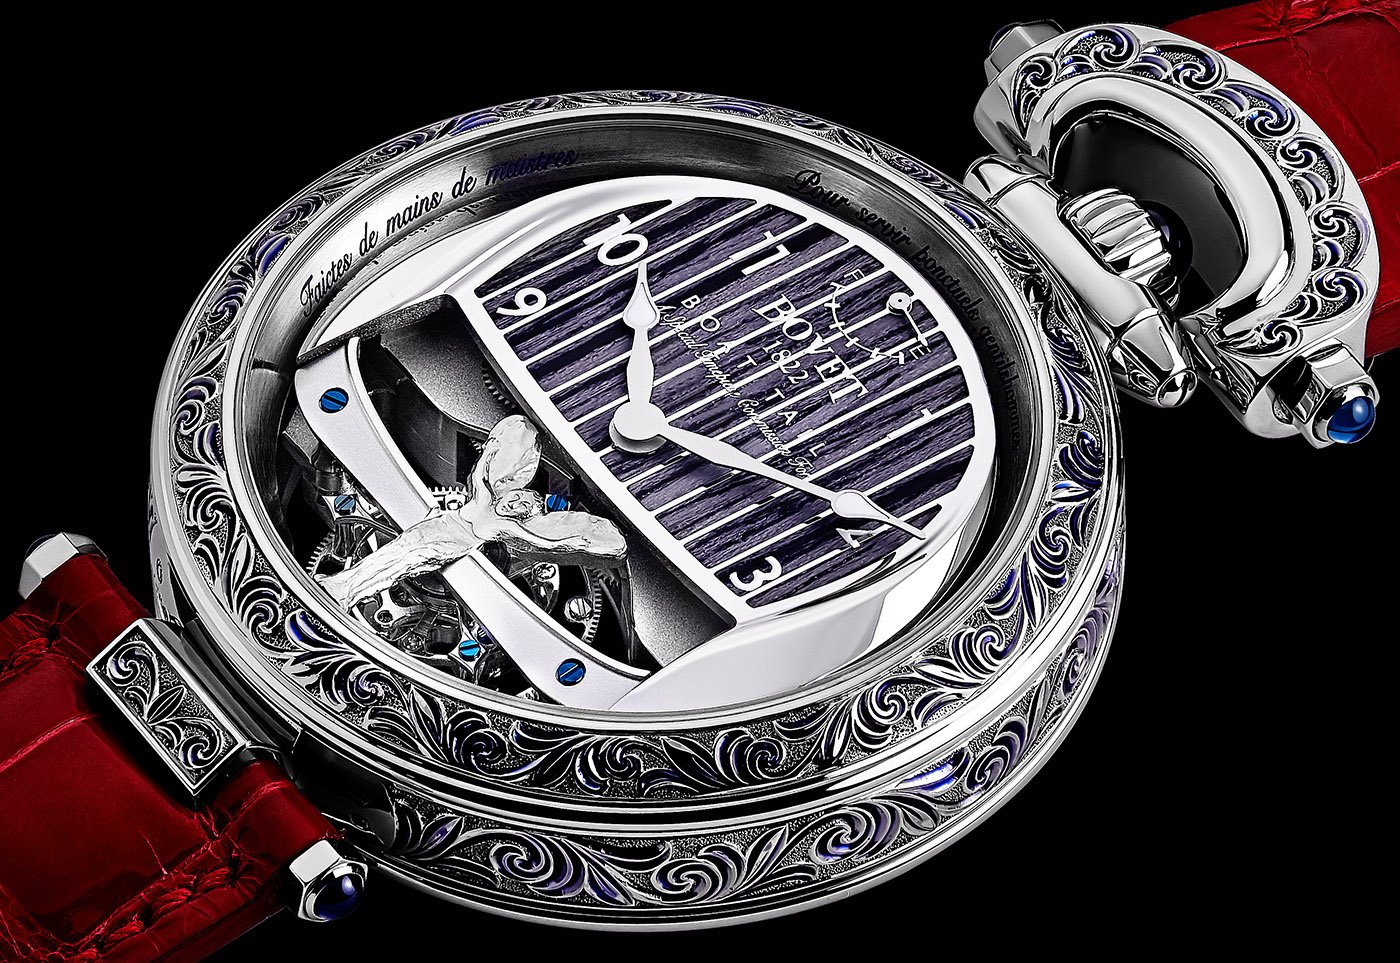 Компании Bovet и Rolls-Royce создали совместно уникальные часы